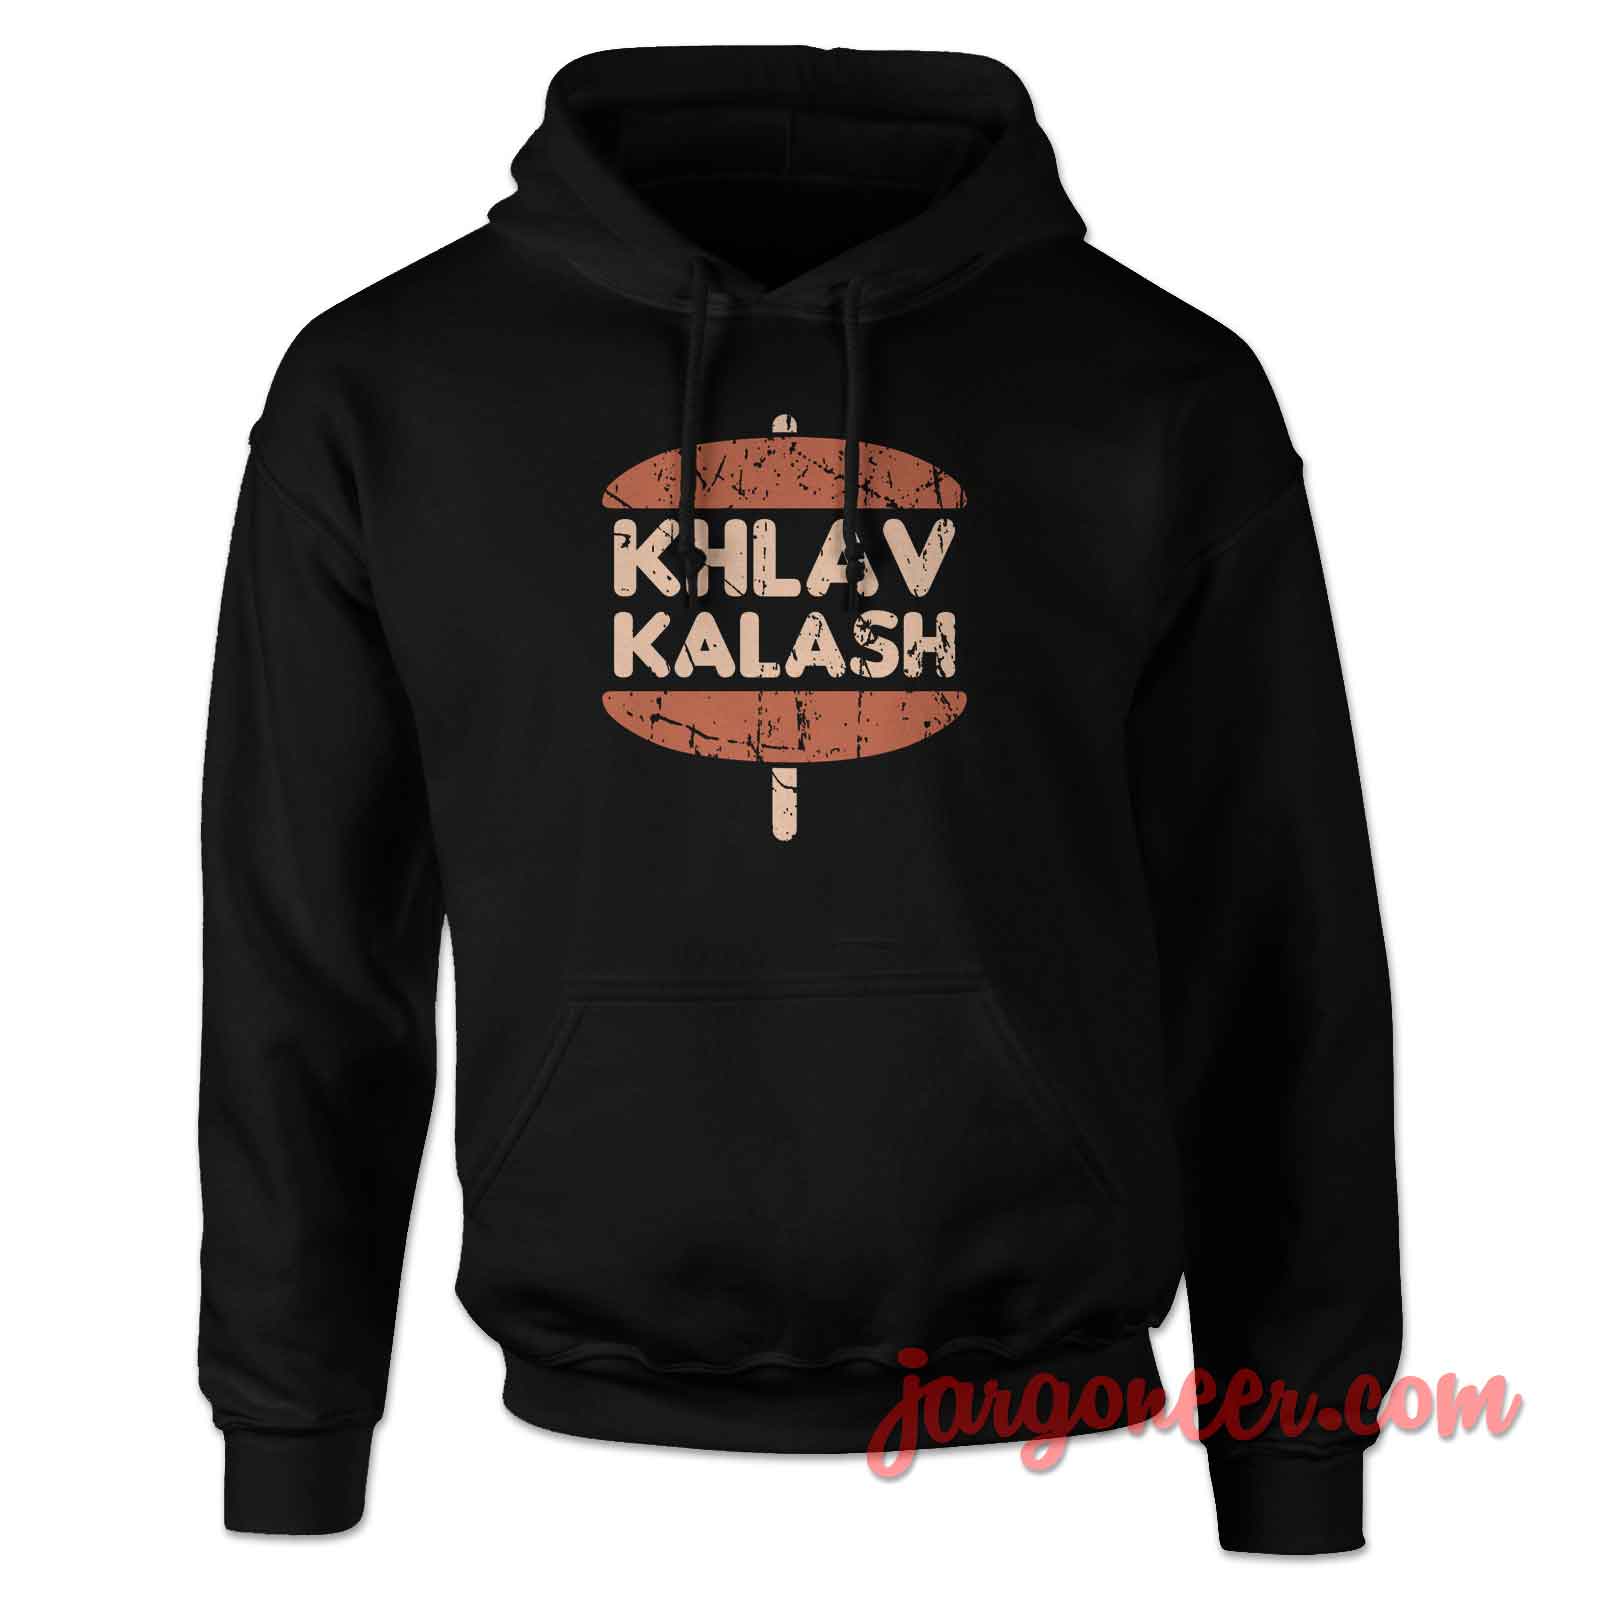 KHLAV KALASH - Shop Unique Graphic Cool Shirt Designs